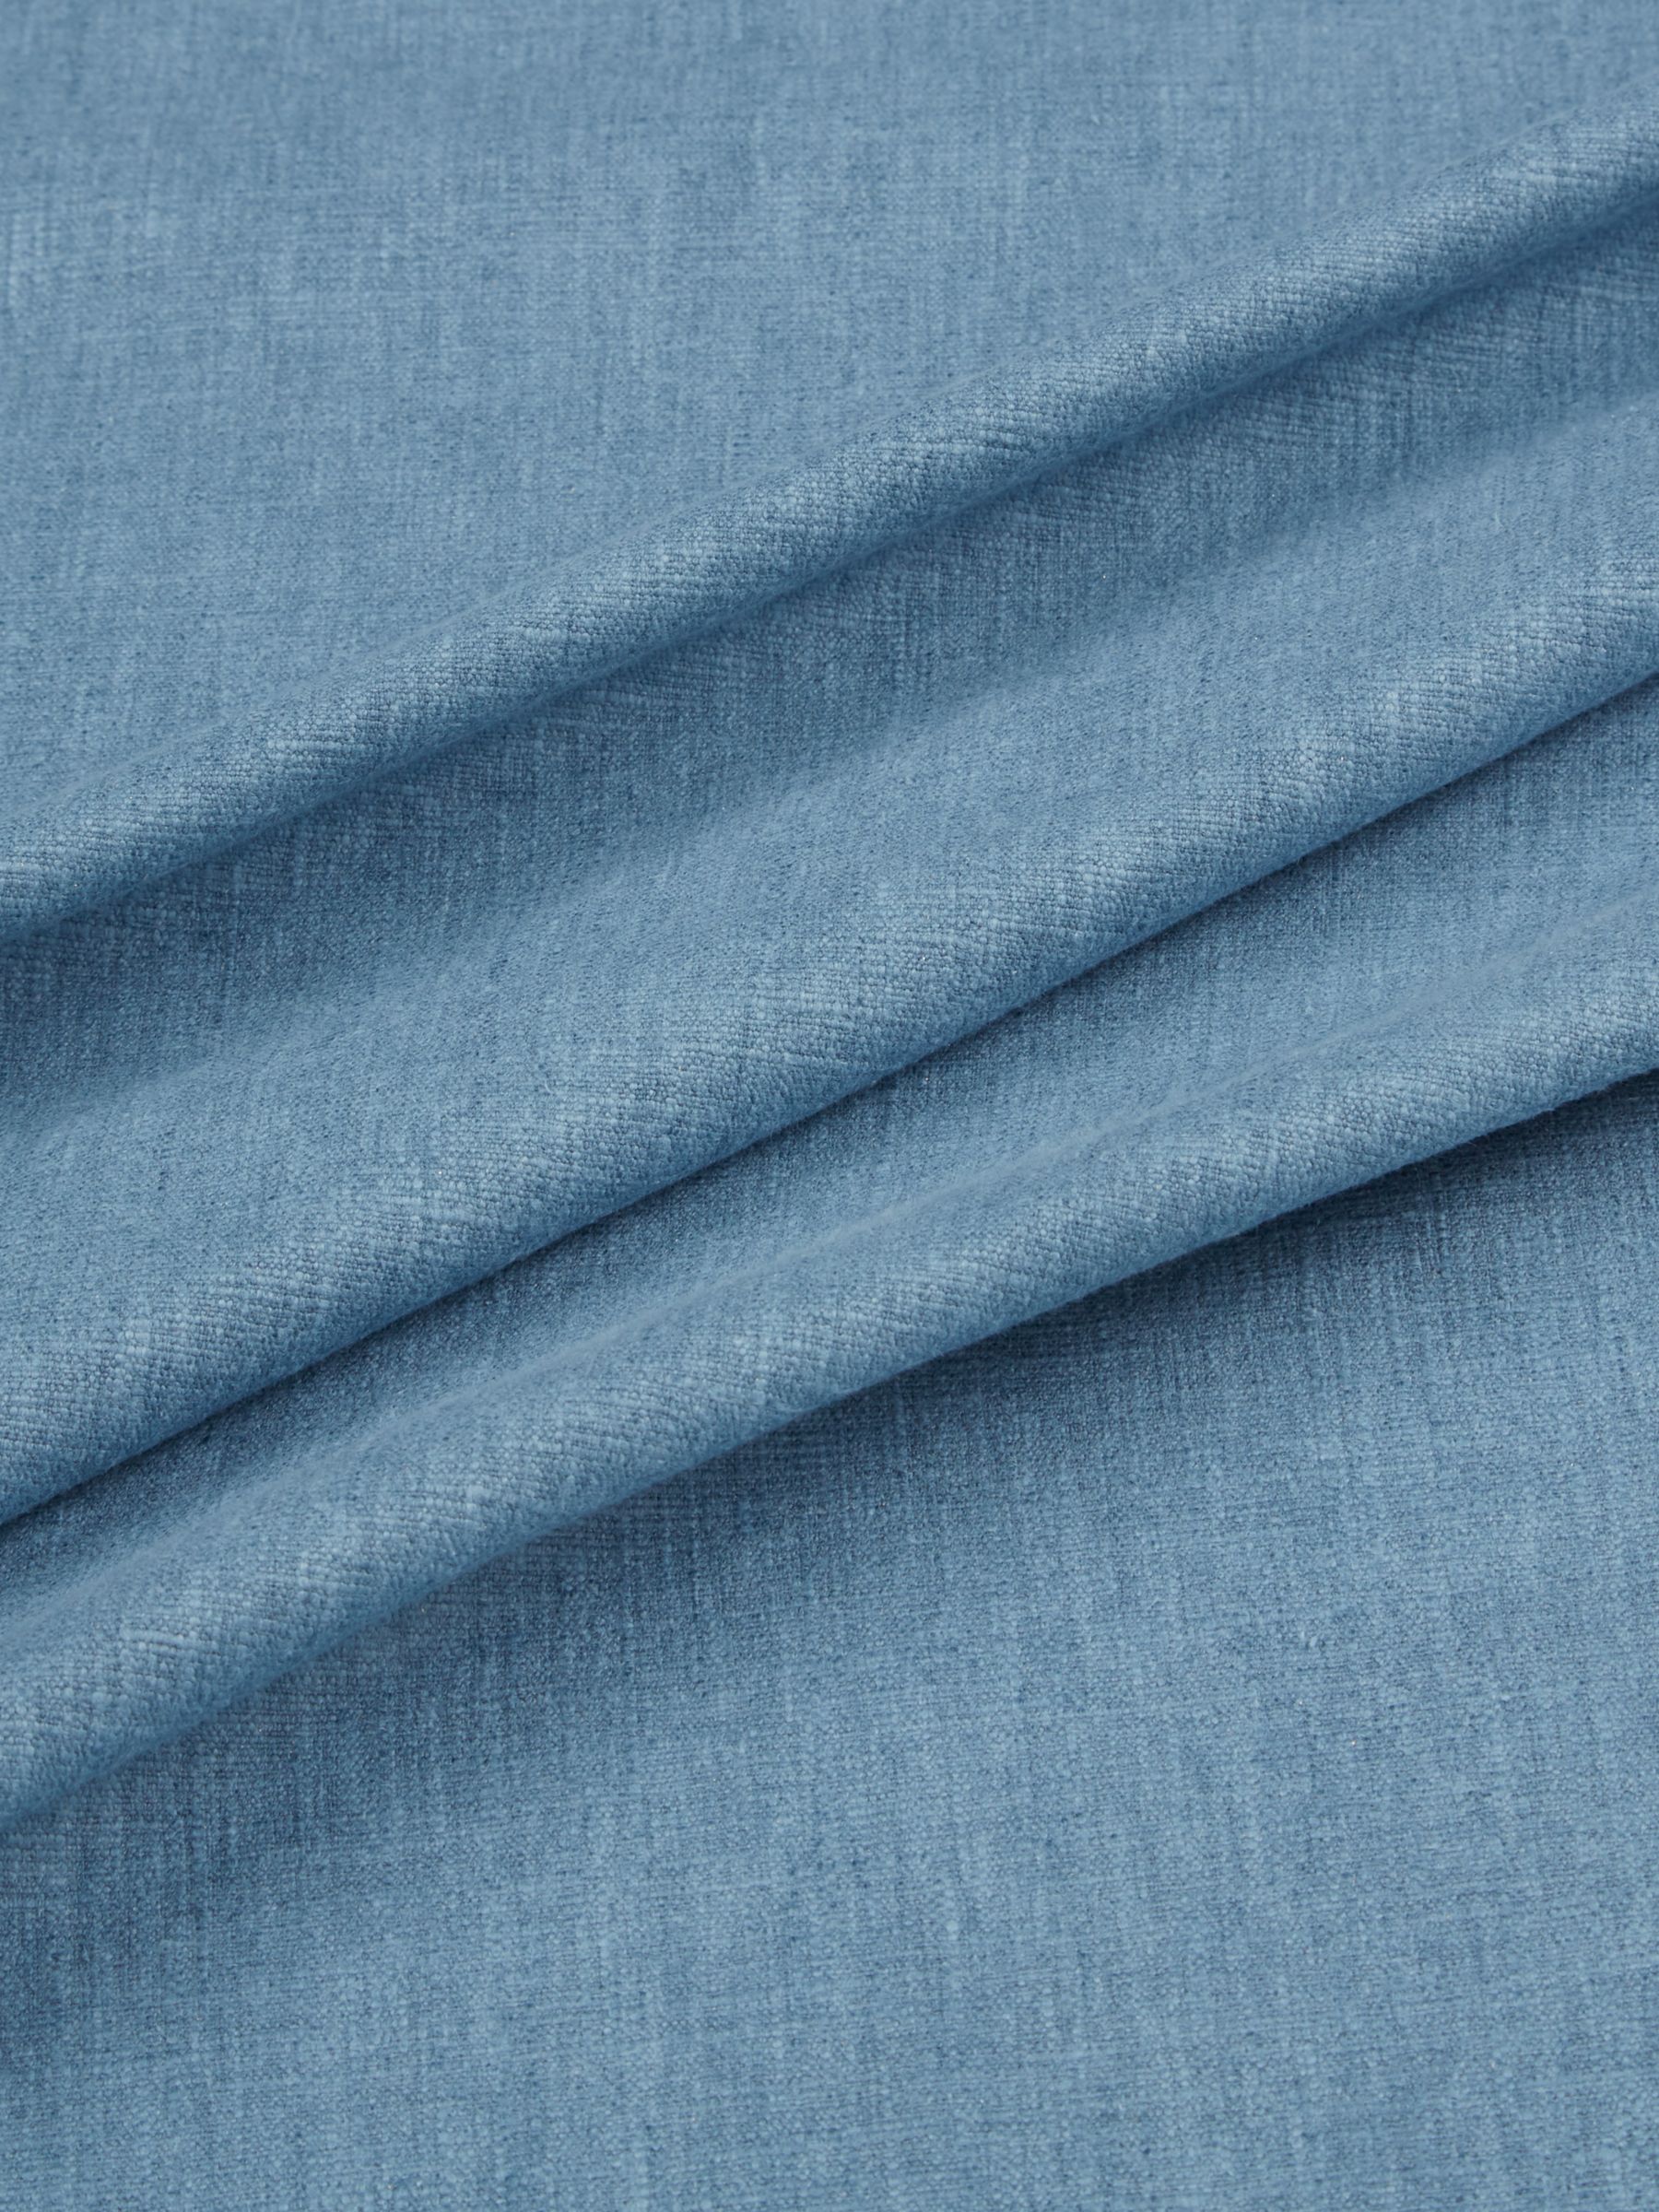 John Lewis Cotton Blend Furnishing Fabric, Denim